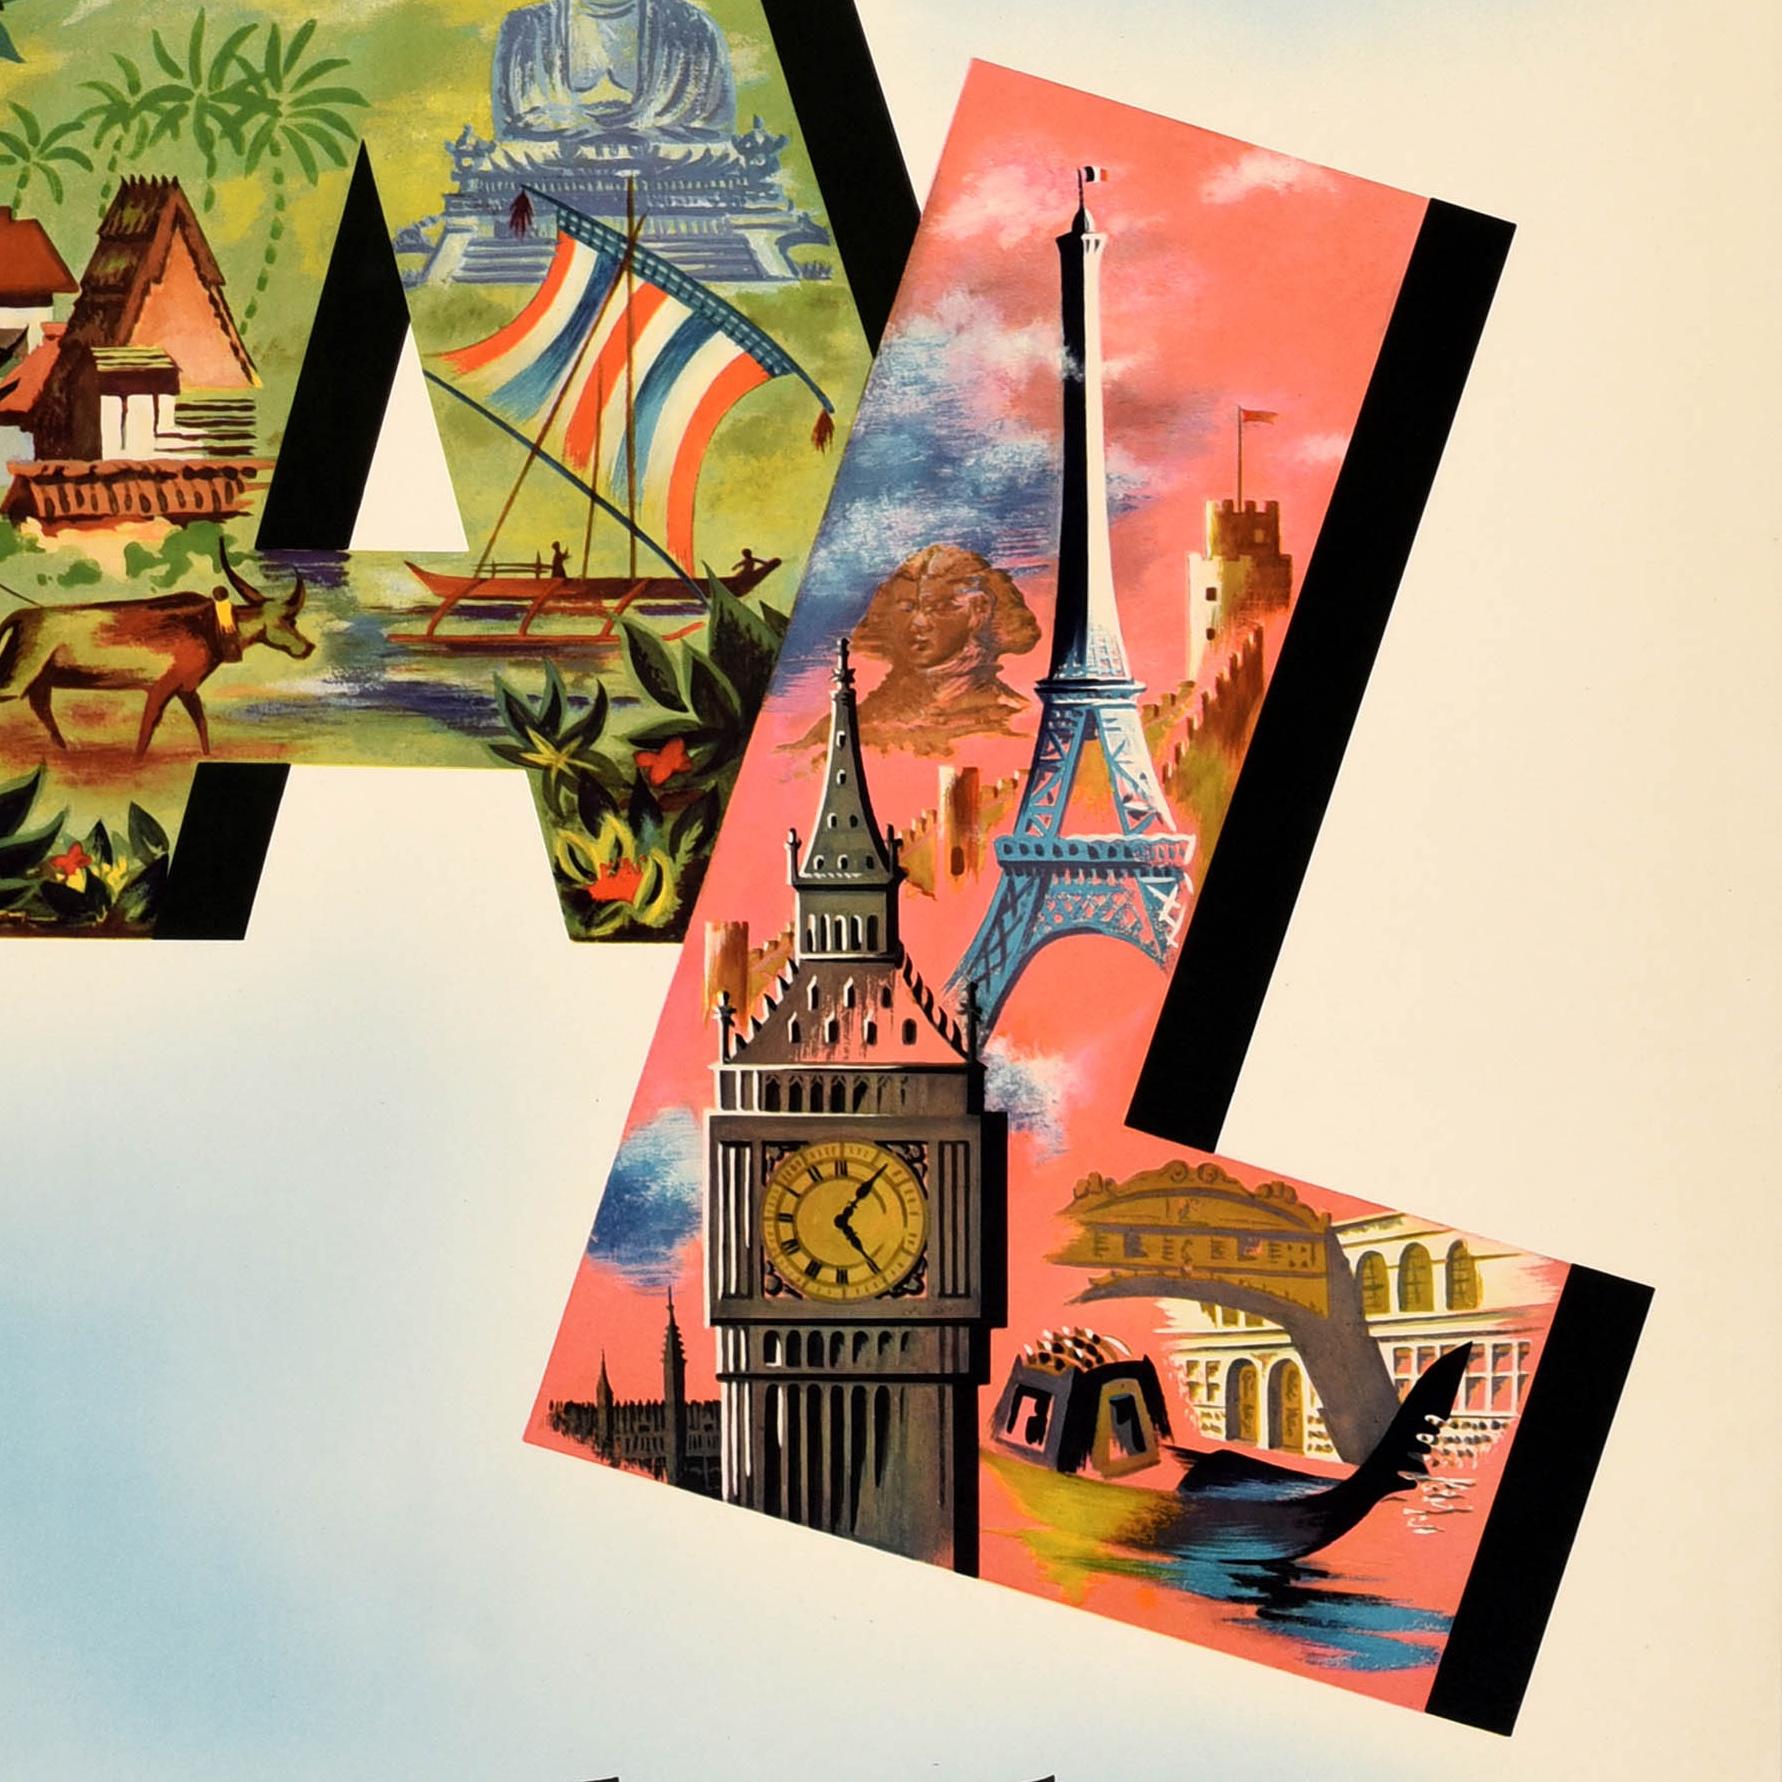 Original Vintage Travel Poster - USA The Orient Europe by DC-6 sleeper PAL Philippine Airlines Speed Comfort Dependability - mit einem großen Design, das ein Passagierflugzeug zeigt, das über die fettgedruckten Initialen fliegt, die Szenen